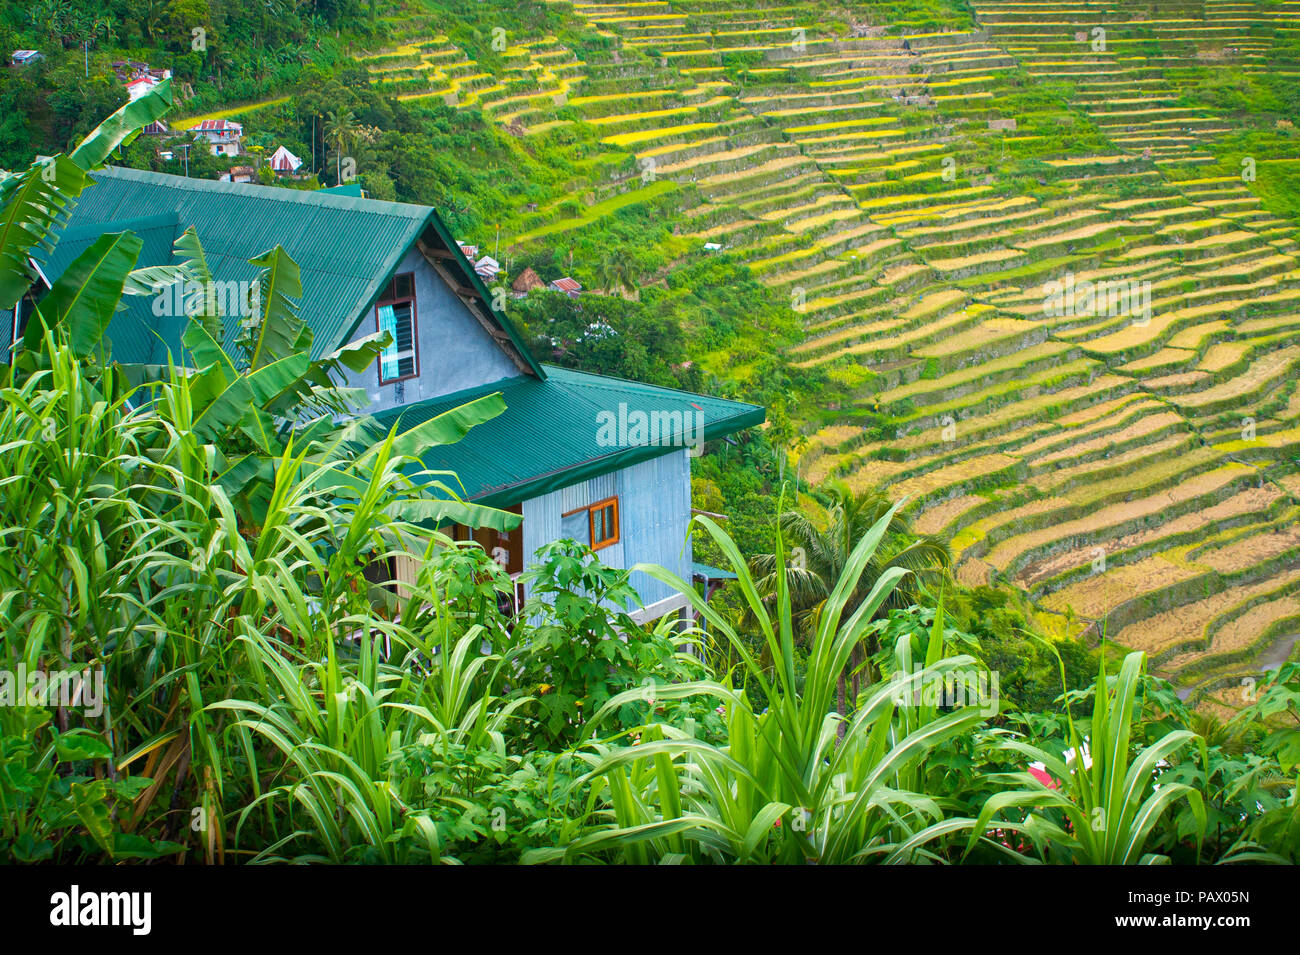 La maison sur la Colline surplombe une magnifique, luxuriante, rizières en terrasses - Batad Village - Ifugao, Philippines Banque D'Images